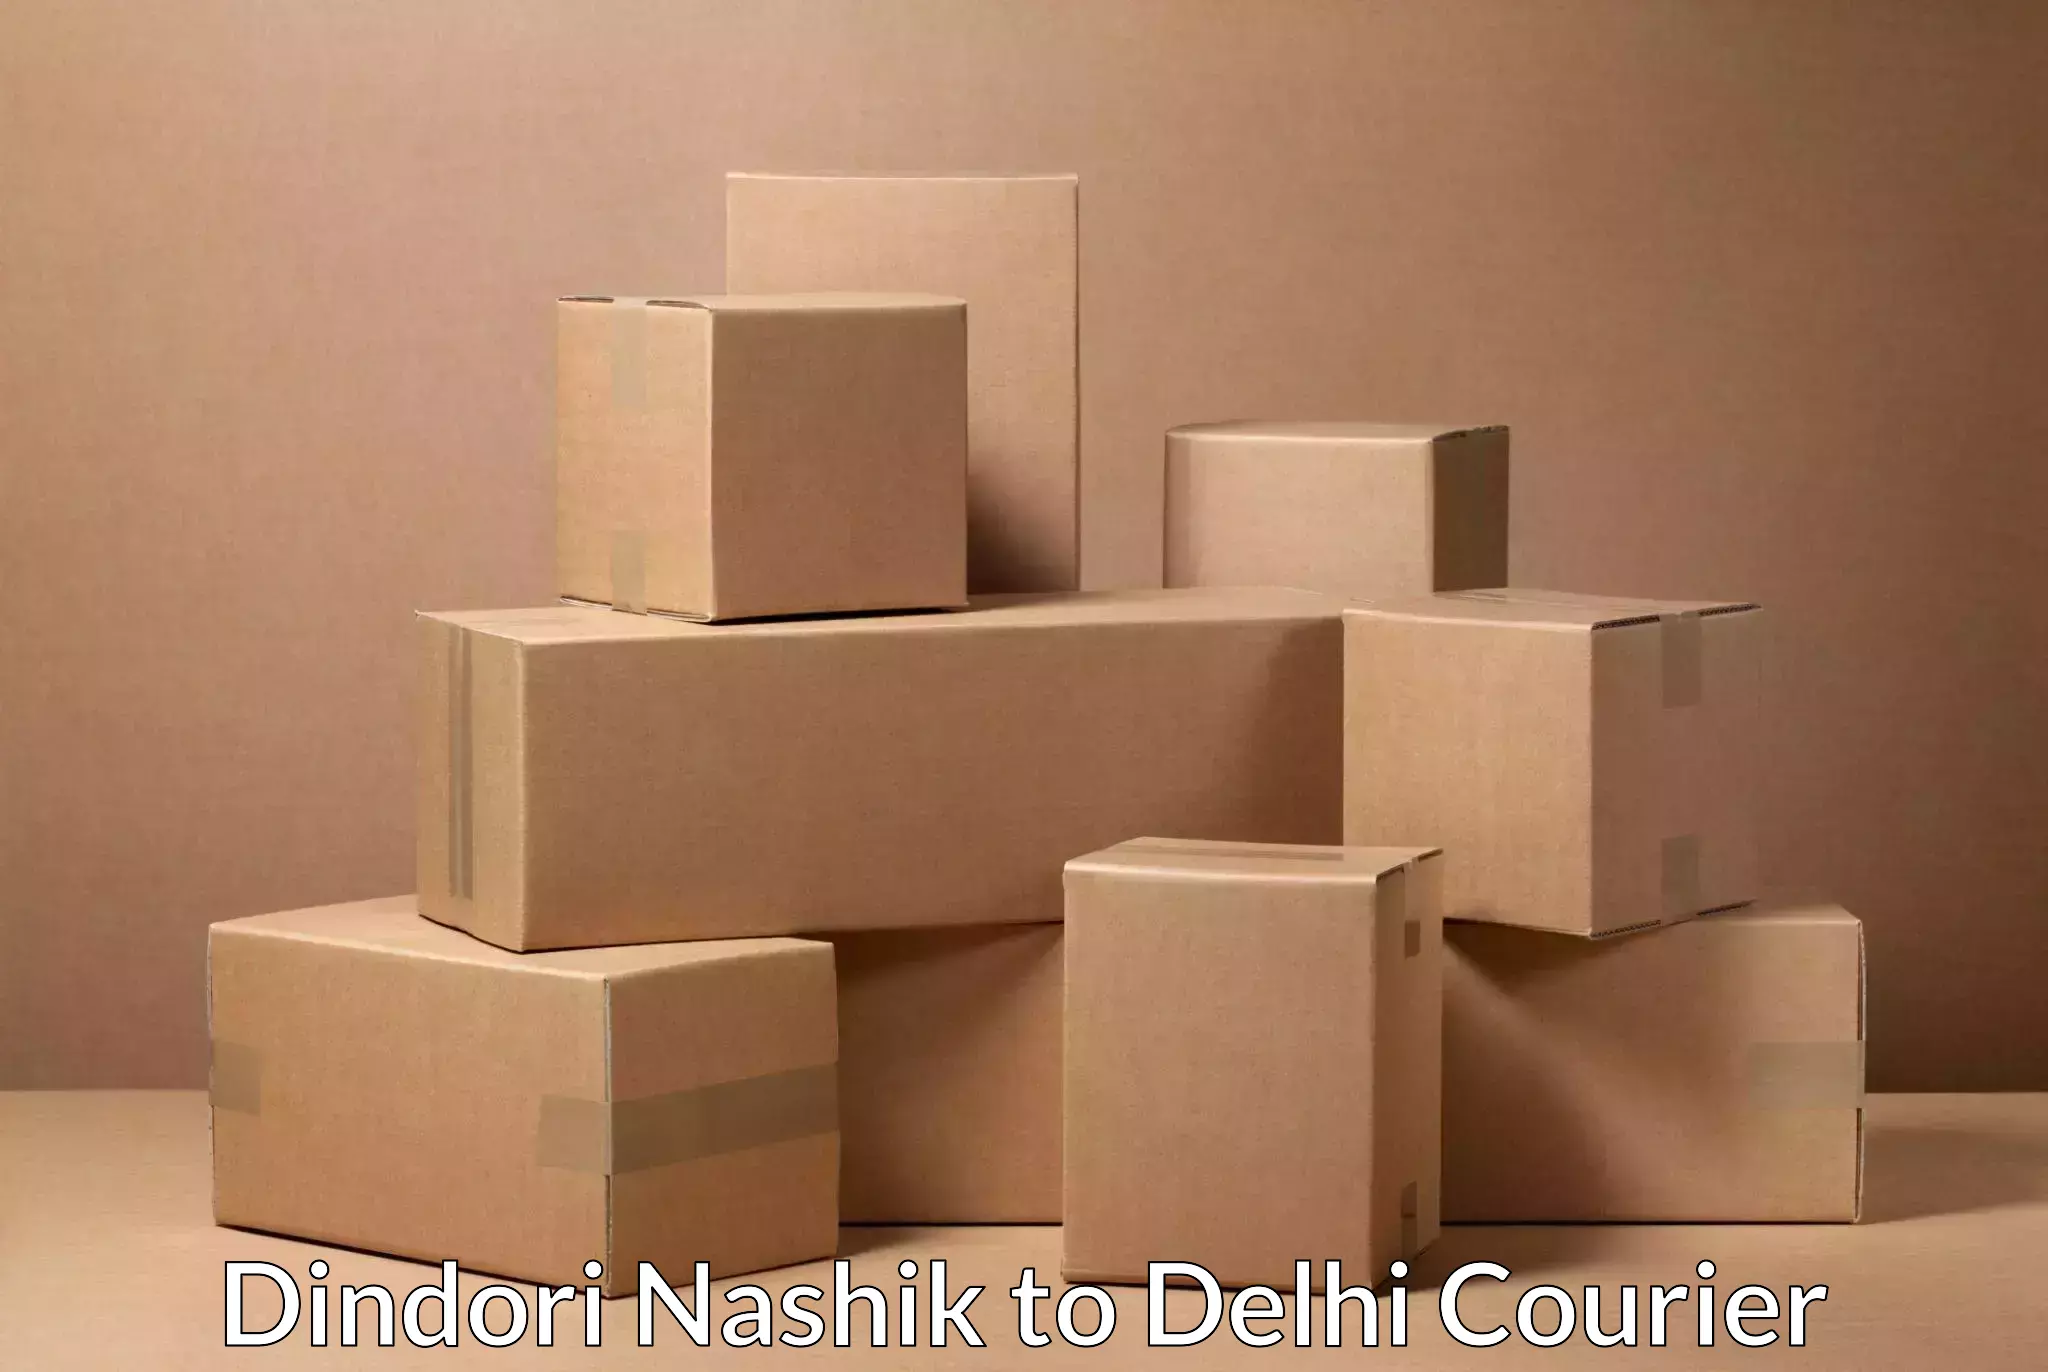 Bulk order courier Dindori Nashik to Sarojini Nagar